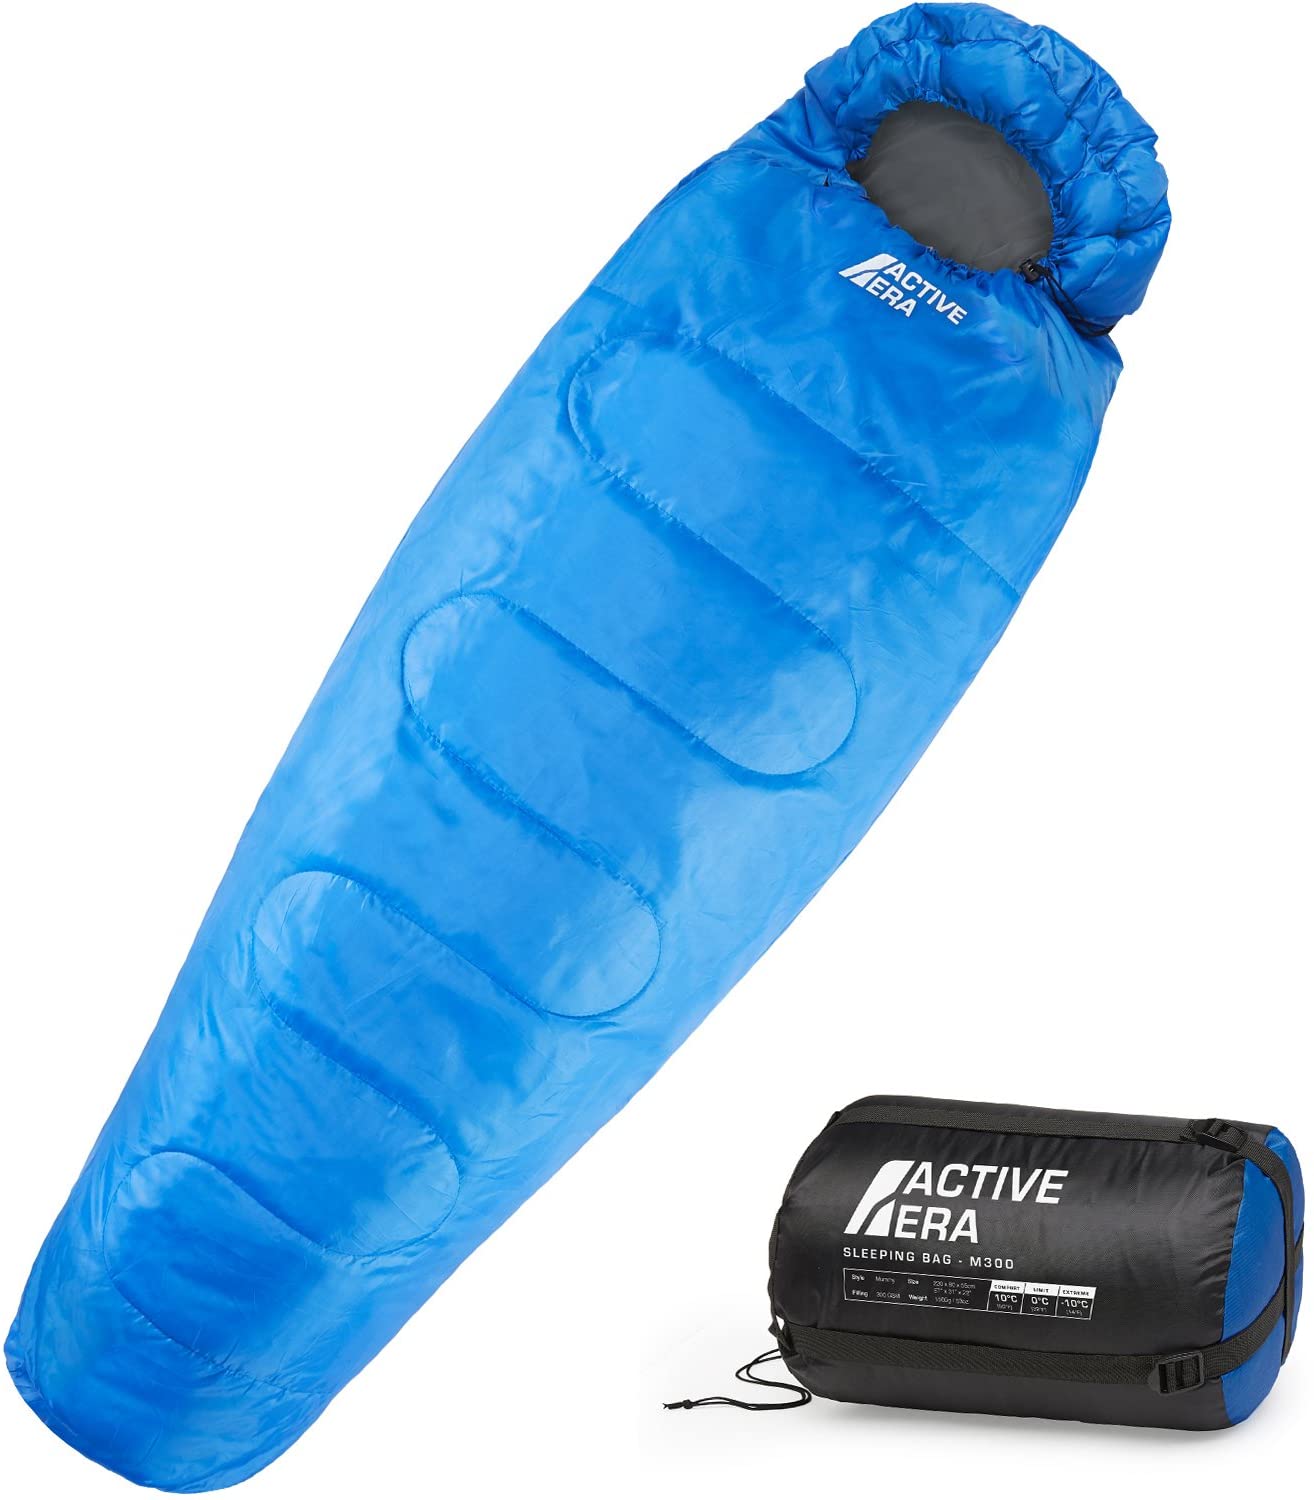 Active Era | Saco de dormir M300 | Tipo momia | 3-4 estaciones | Ideal para camping y excursiones